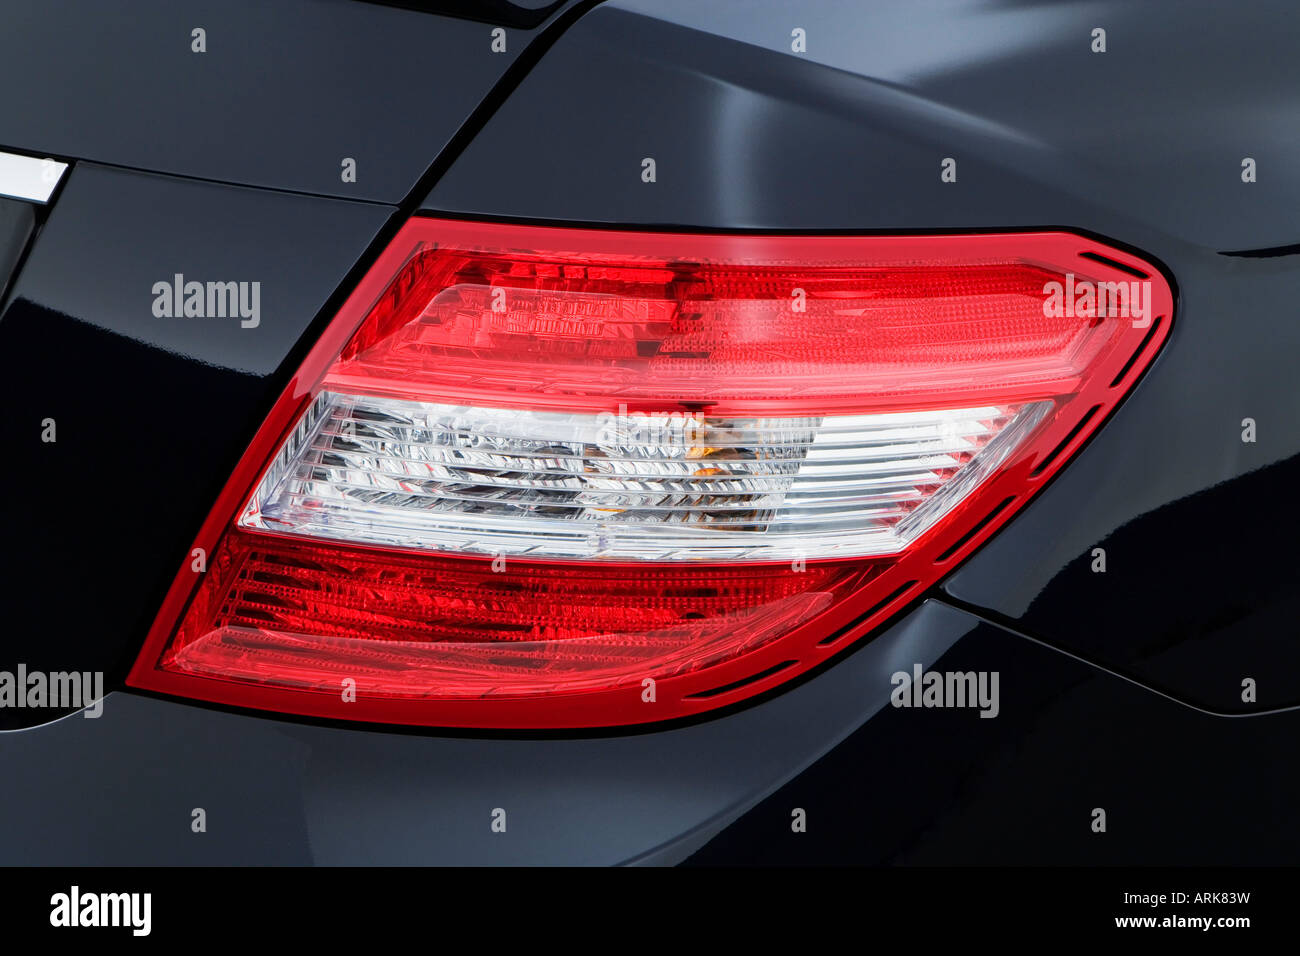 Mercedes C350 Fotos E Imagenes De Stock Alamy